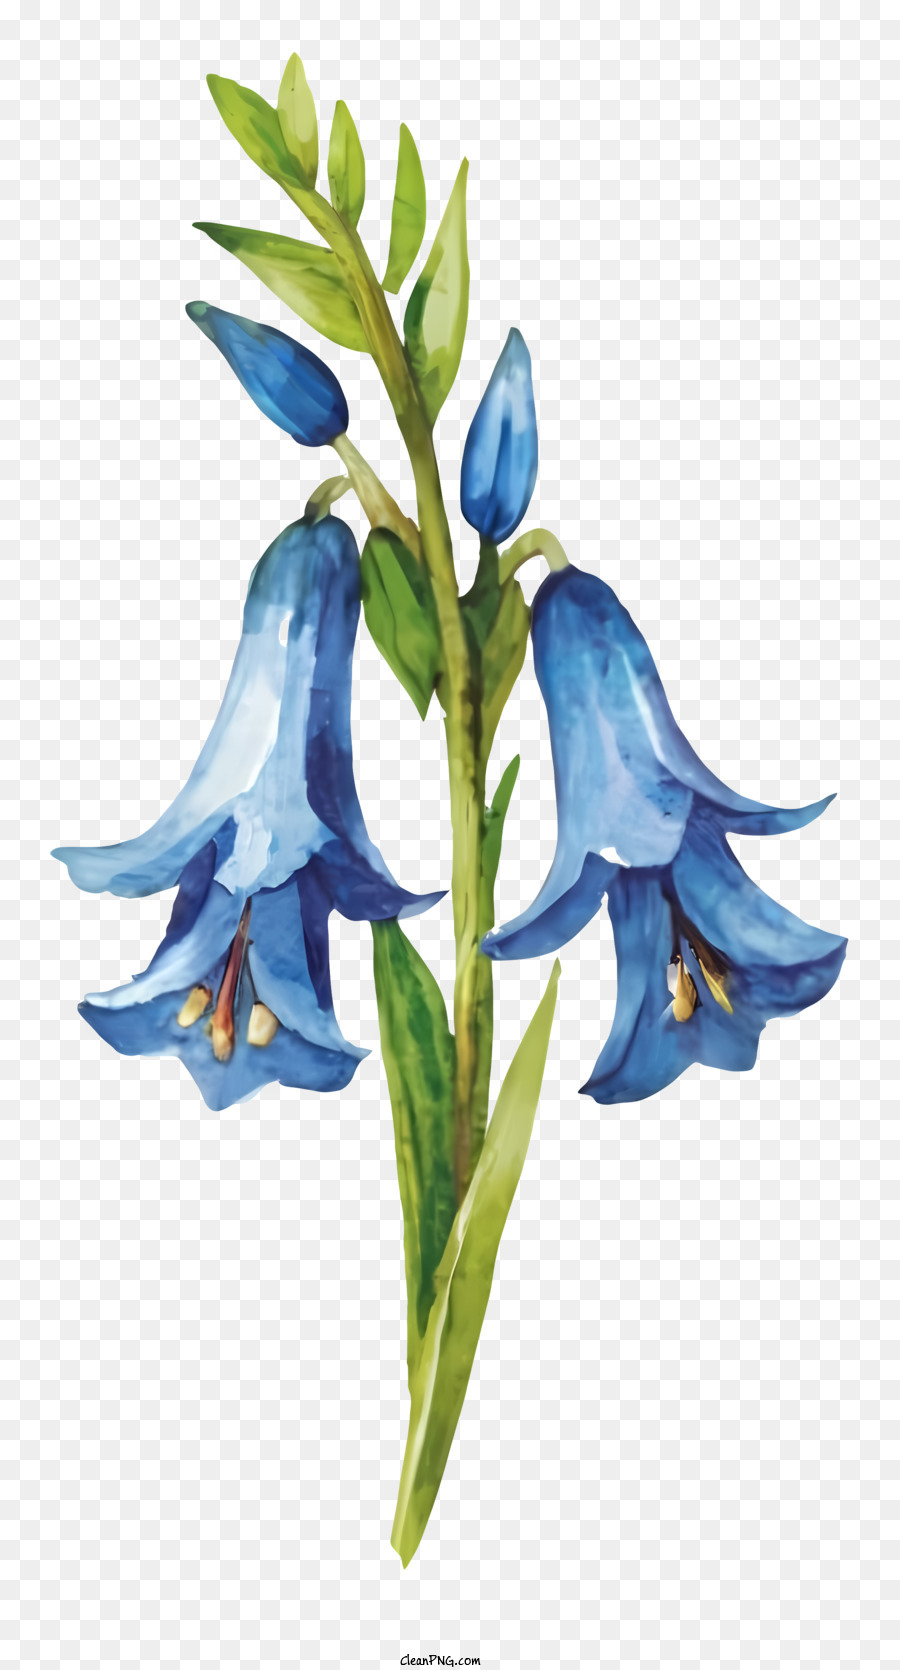 Blaue Blume - Blaue Blume mit weißem Zentrum und grünem Stiel